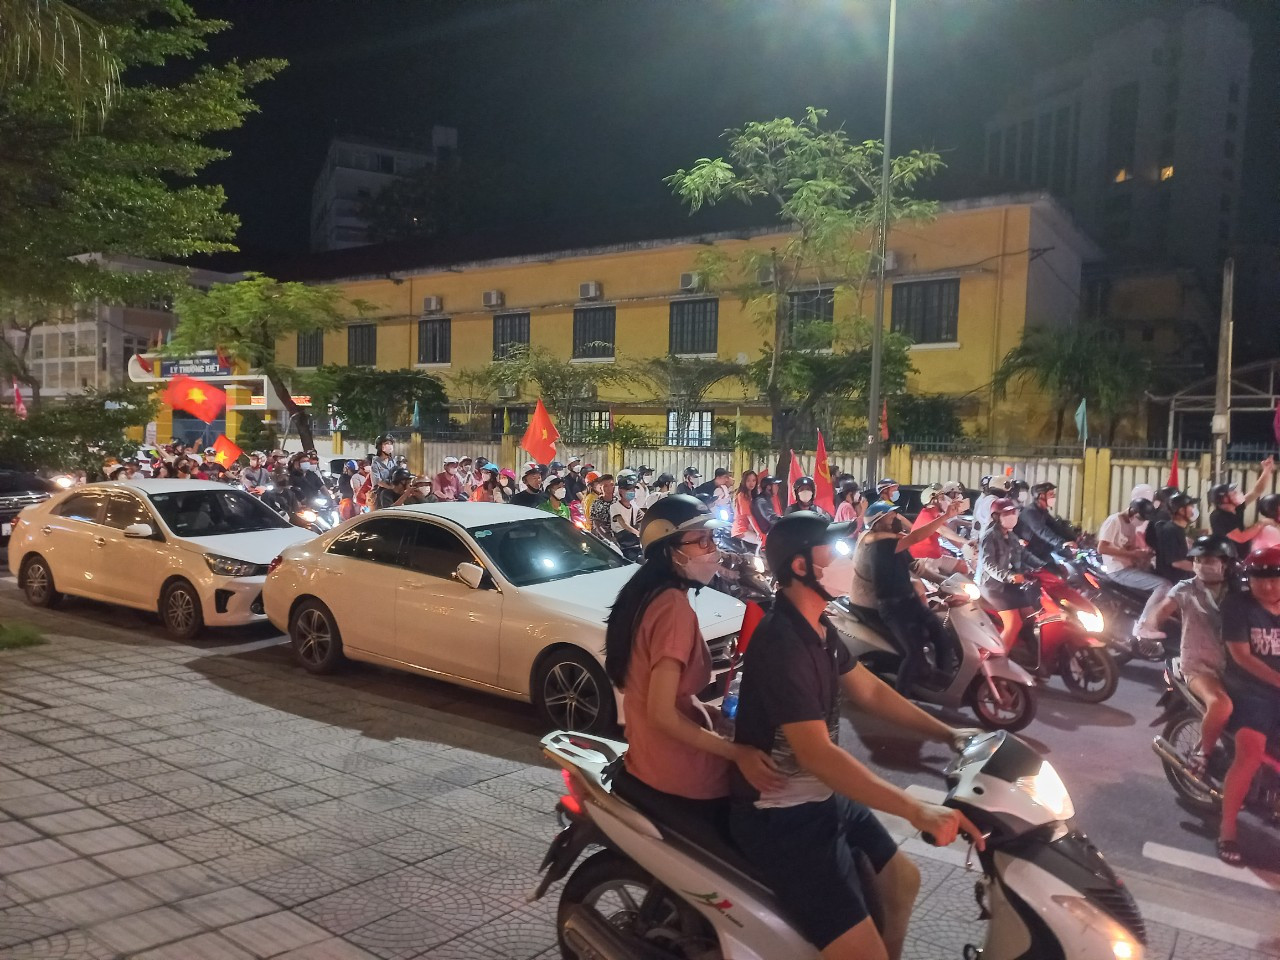 Sau khi kết thúc trận chung kết giữa U23 Việt Nam và U23 Thái Lan, hàng nghìn người dân tại đã tập trung về các tuyến đường trung tâm TP. Huế để đi “bão” ăn mừng chiến thắng của thầy trò HLV Park hang-seo.